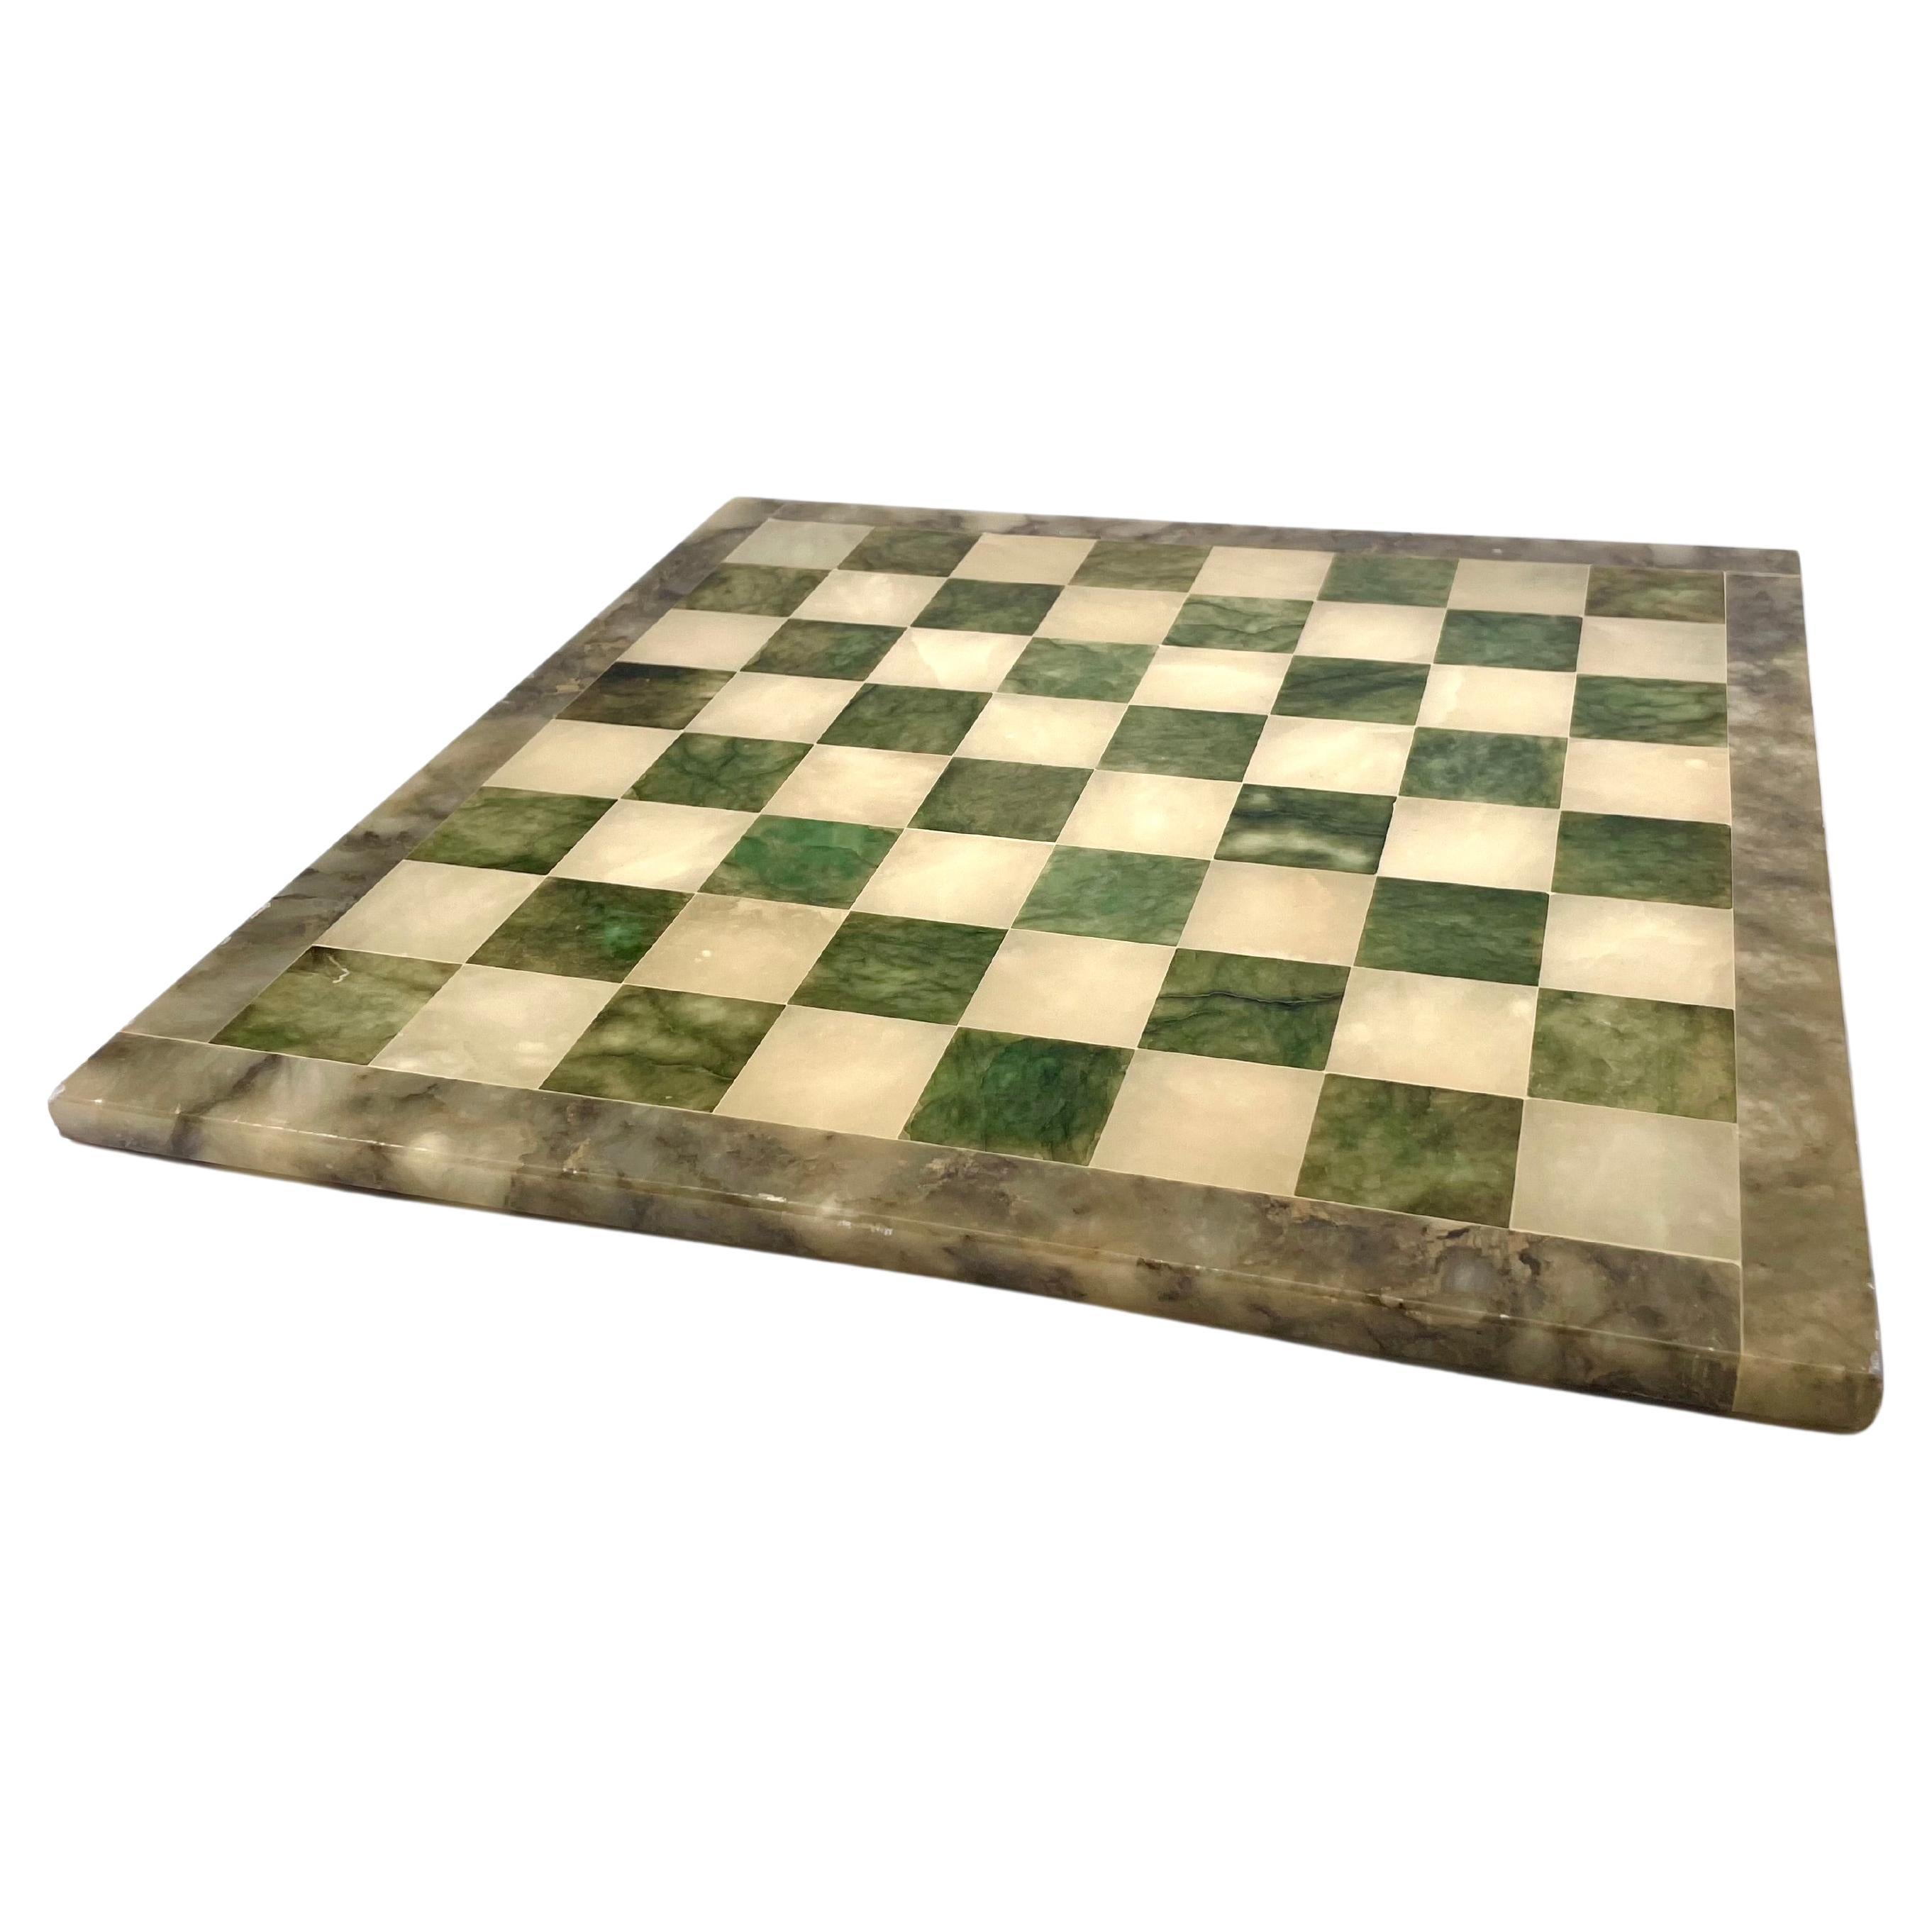 Tableau d'échecs en onyx et marbre, blanc et vert